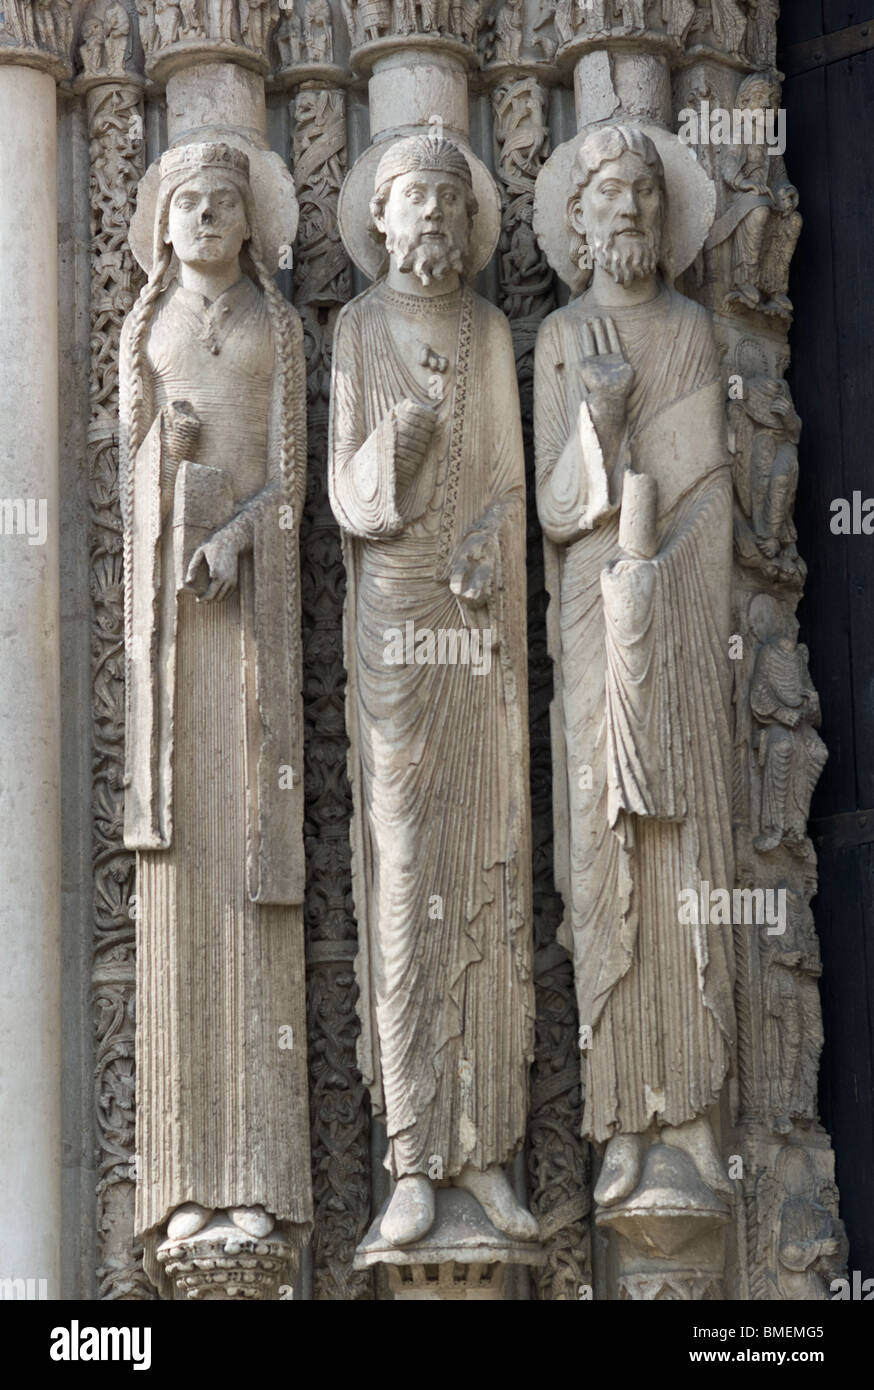 SCULPTURES DE LA cathédrale de Chartres Chartres, France Banque D'Images